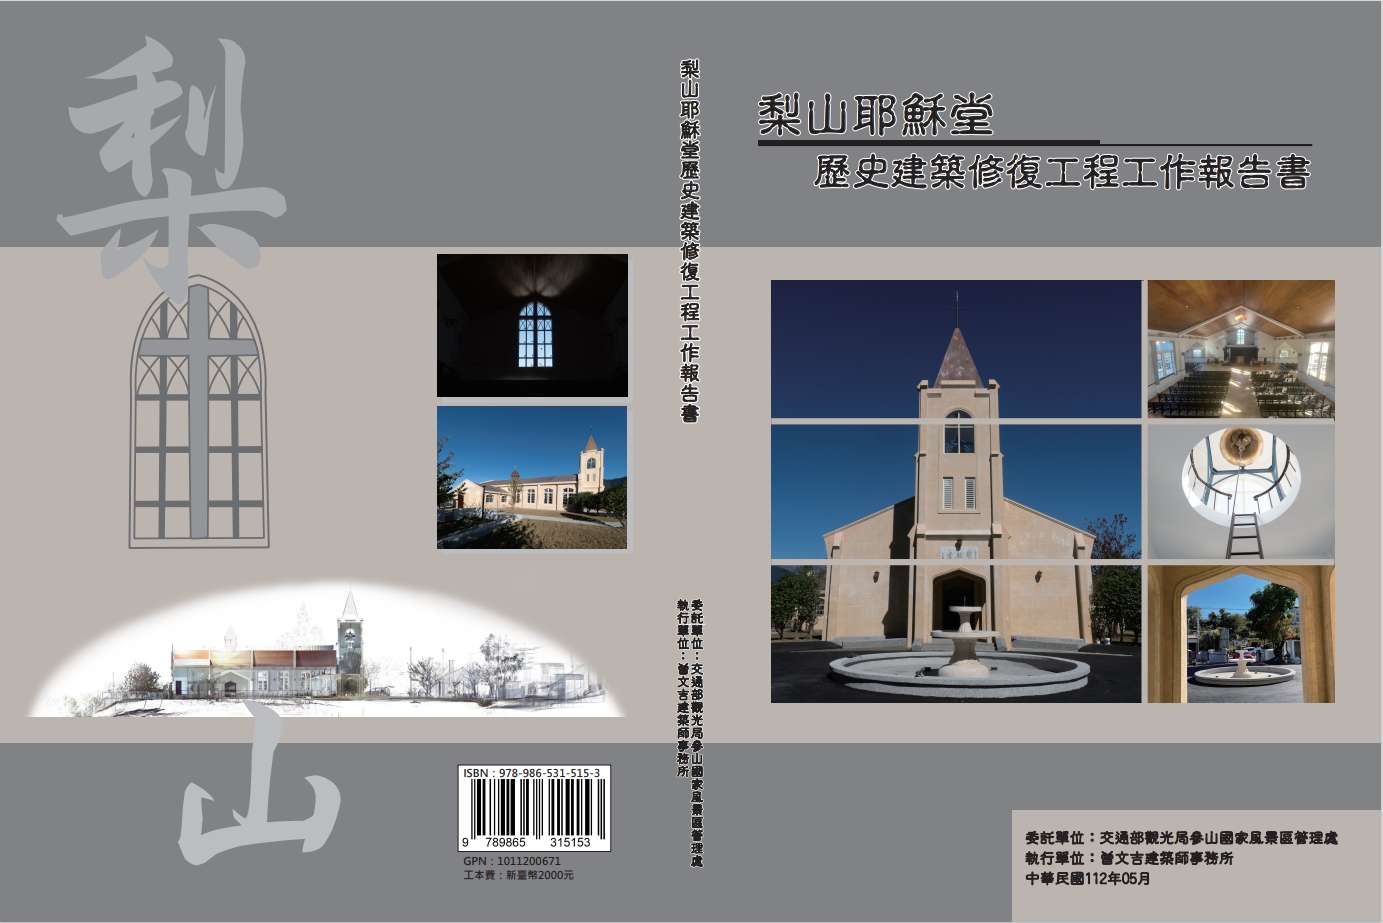 梨山耶穌堂歷史建築修復工程工作報告書